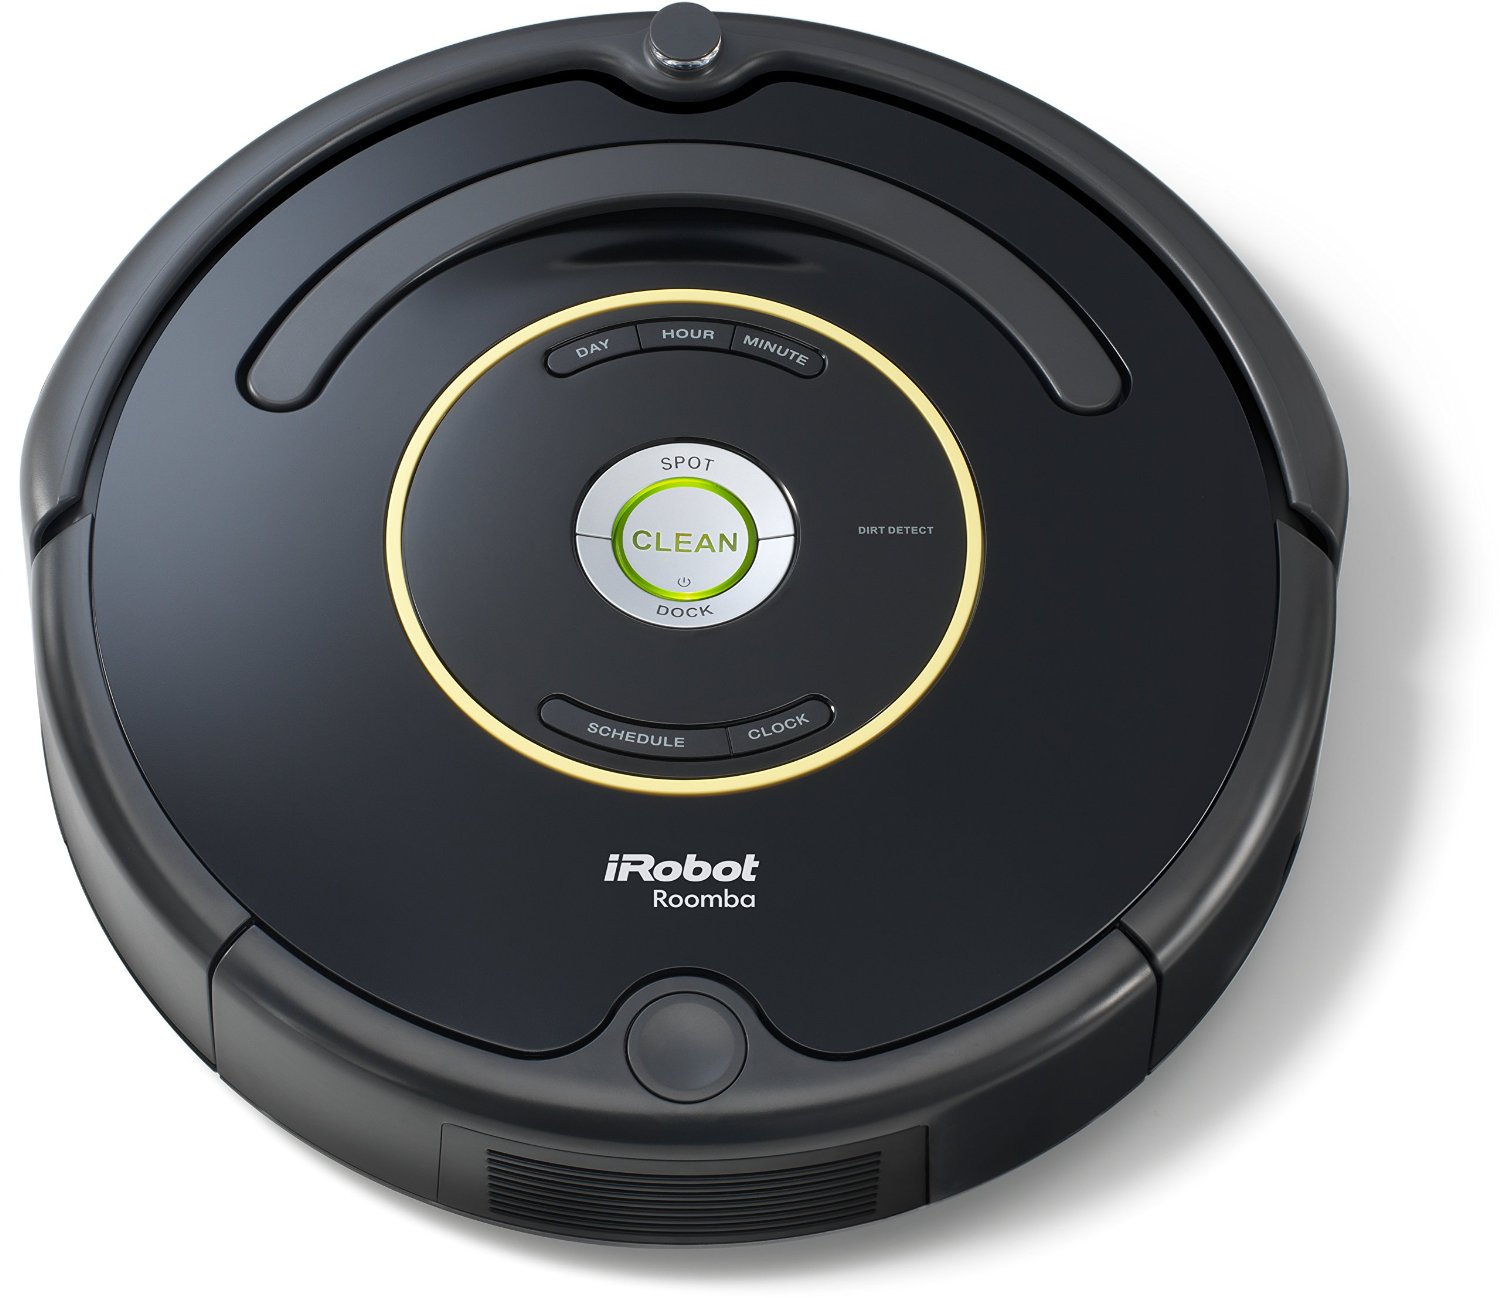 Base de carga Roomba - Original de iRobot - Incluye cable cargador